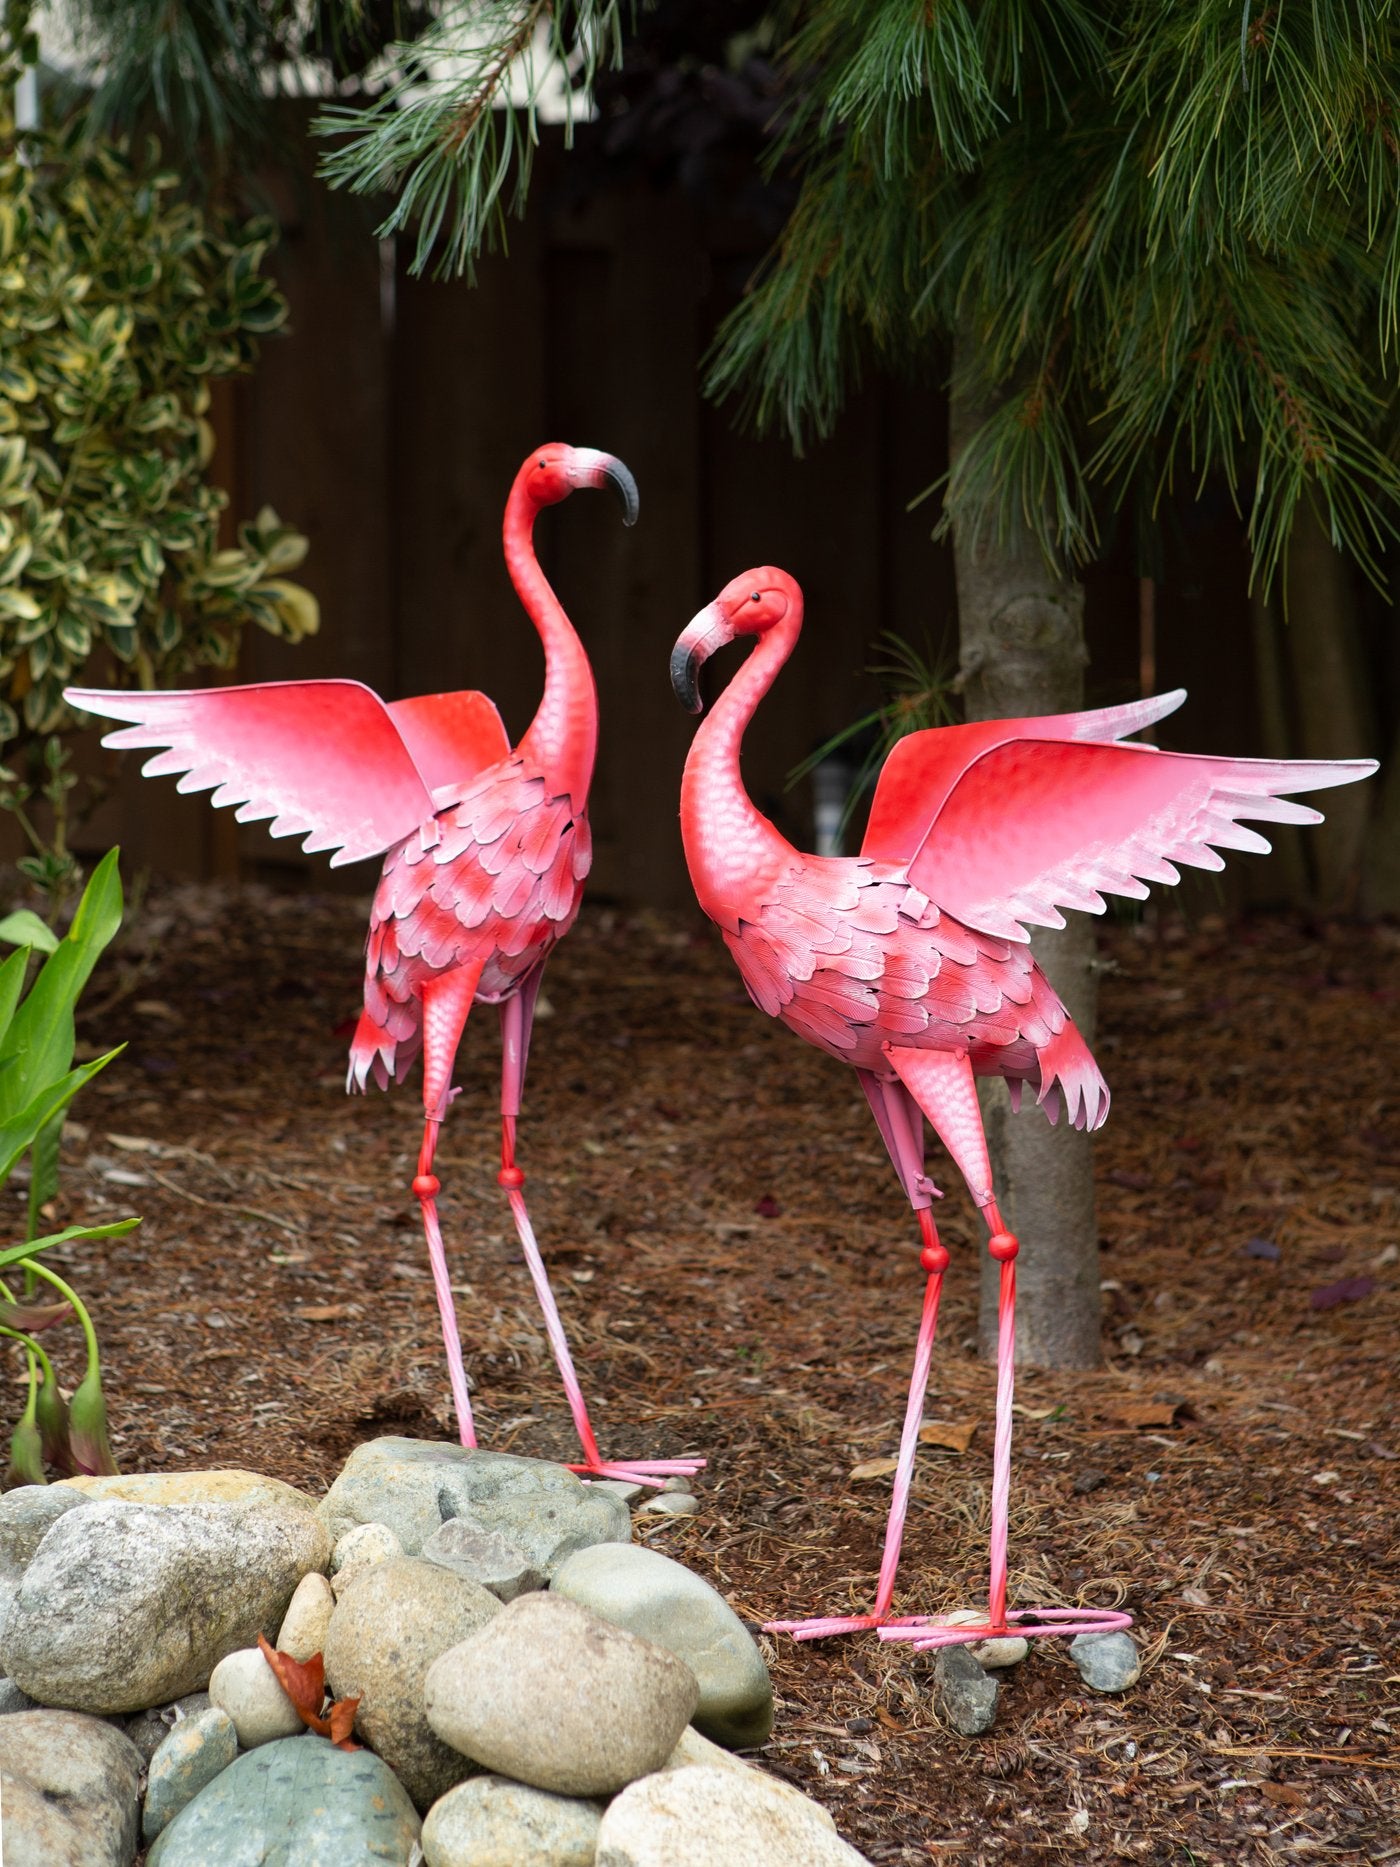 Large Flying Flamingo Statue